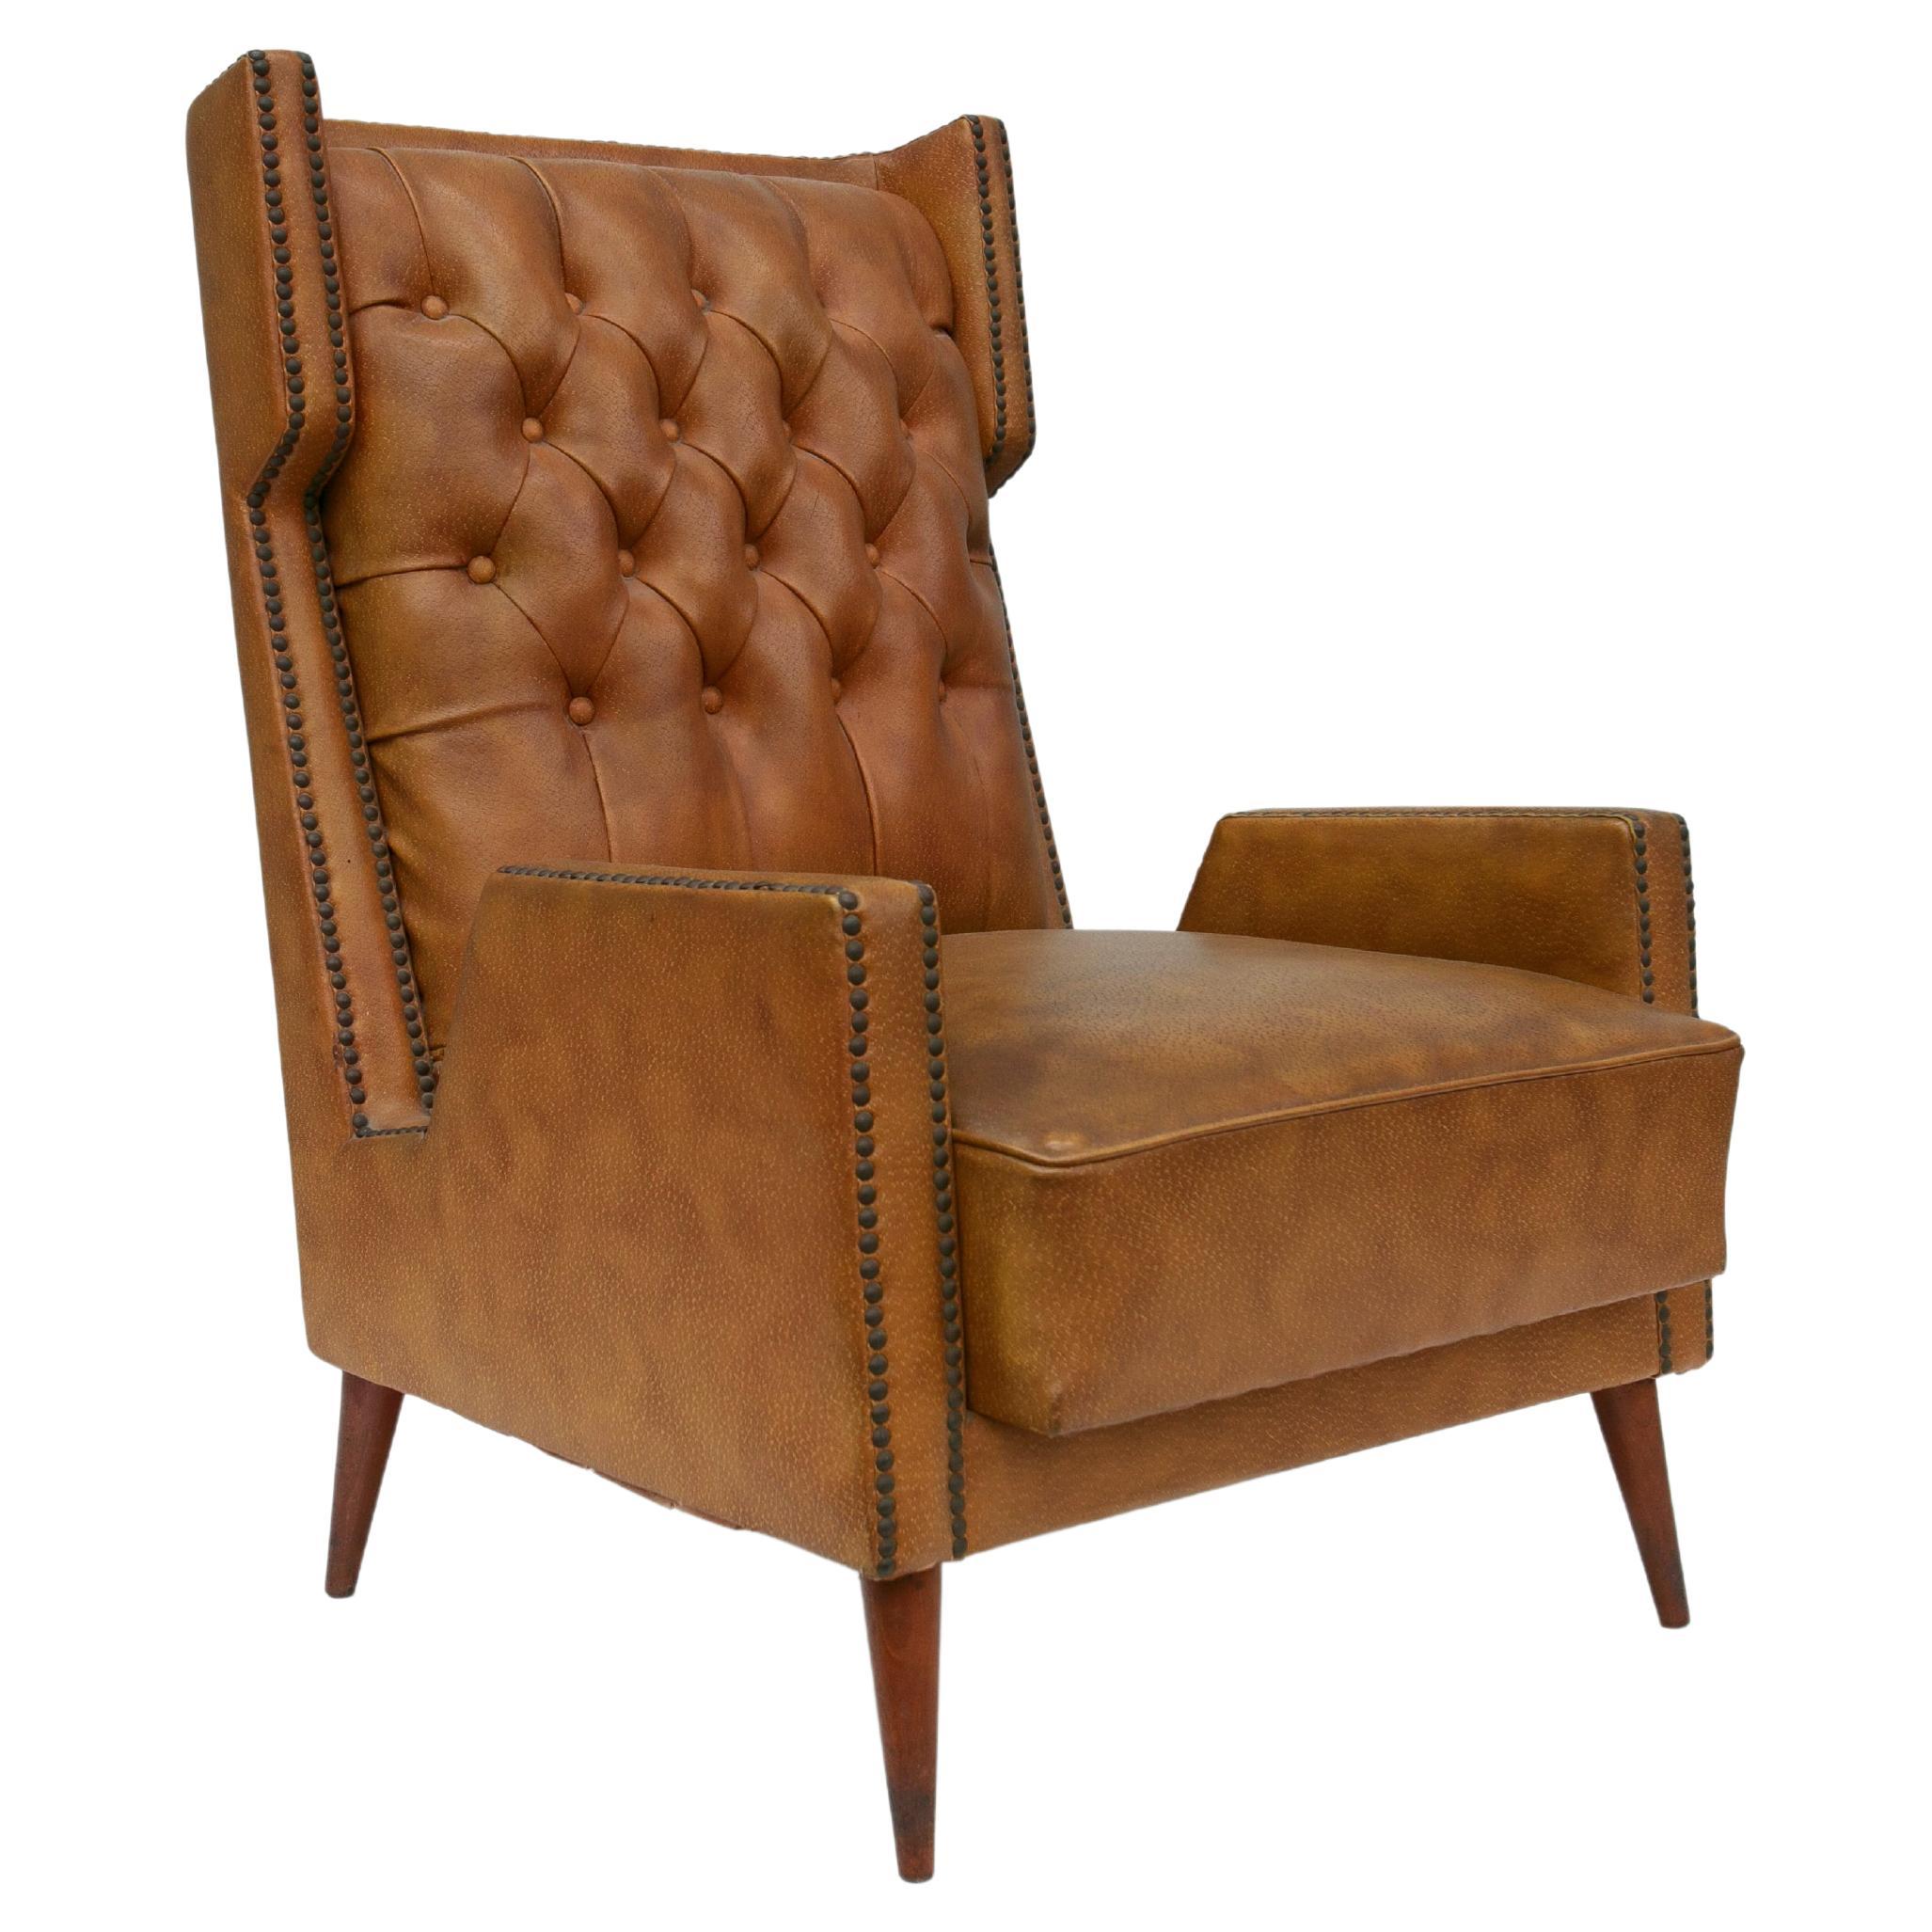 Dieser moderne Sessel aus Hartholz und braunem Kunstleder von Giuseppe Scapinelli aus dem Brasilien der 1950er Jahre ist nichts weniger als das FIND des Jahres!

Der Sessel befindet sich in seiner ursprünglichen Form und ist in einem ausgezeichneten